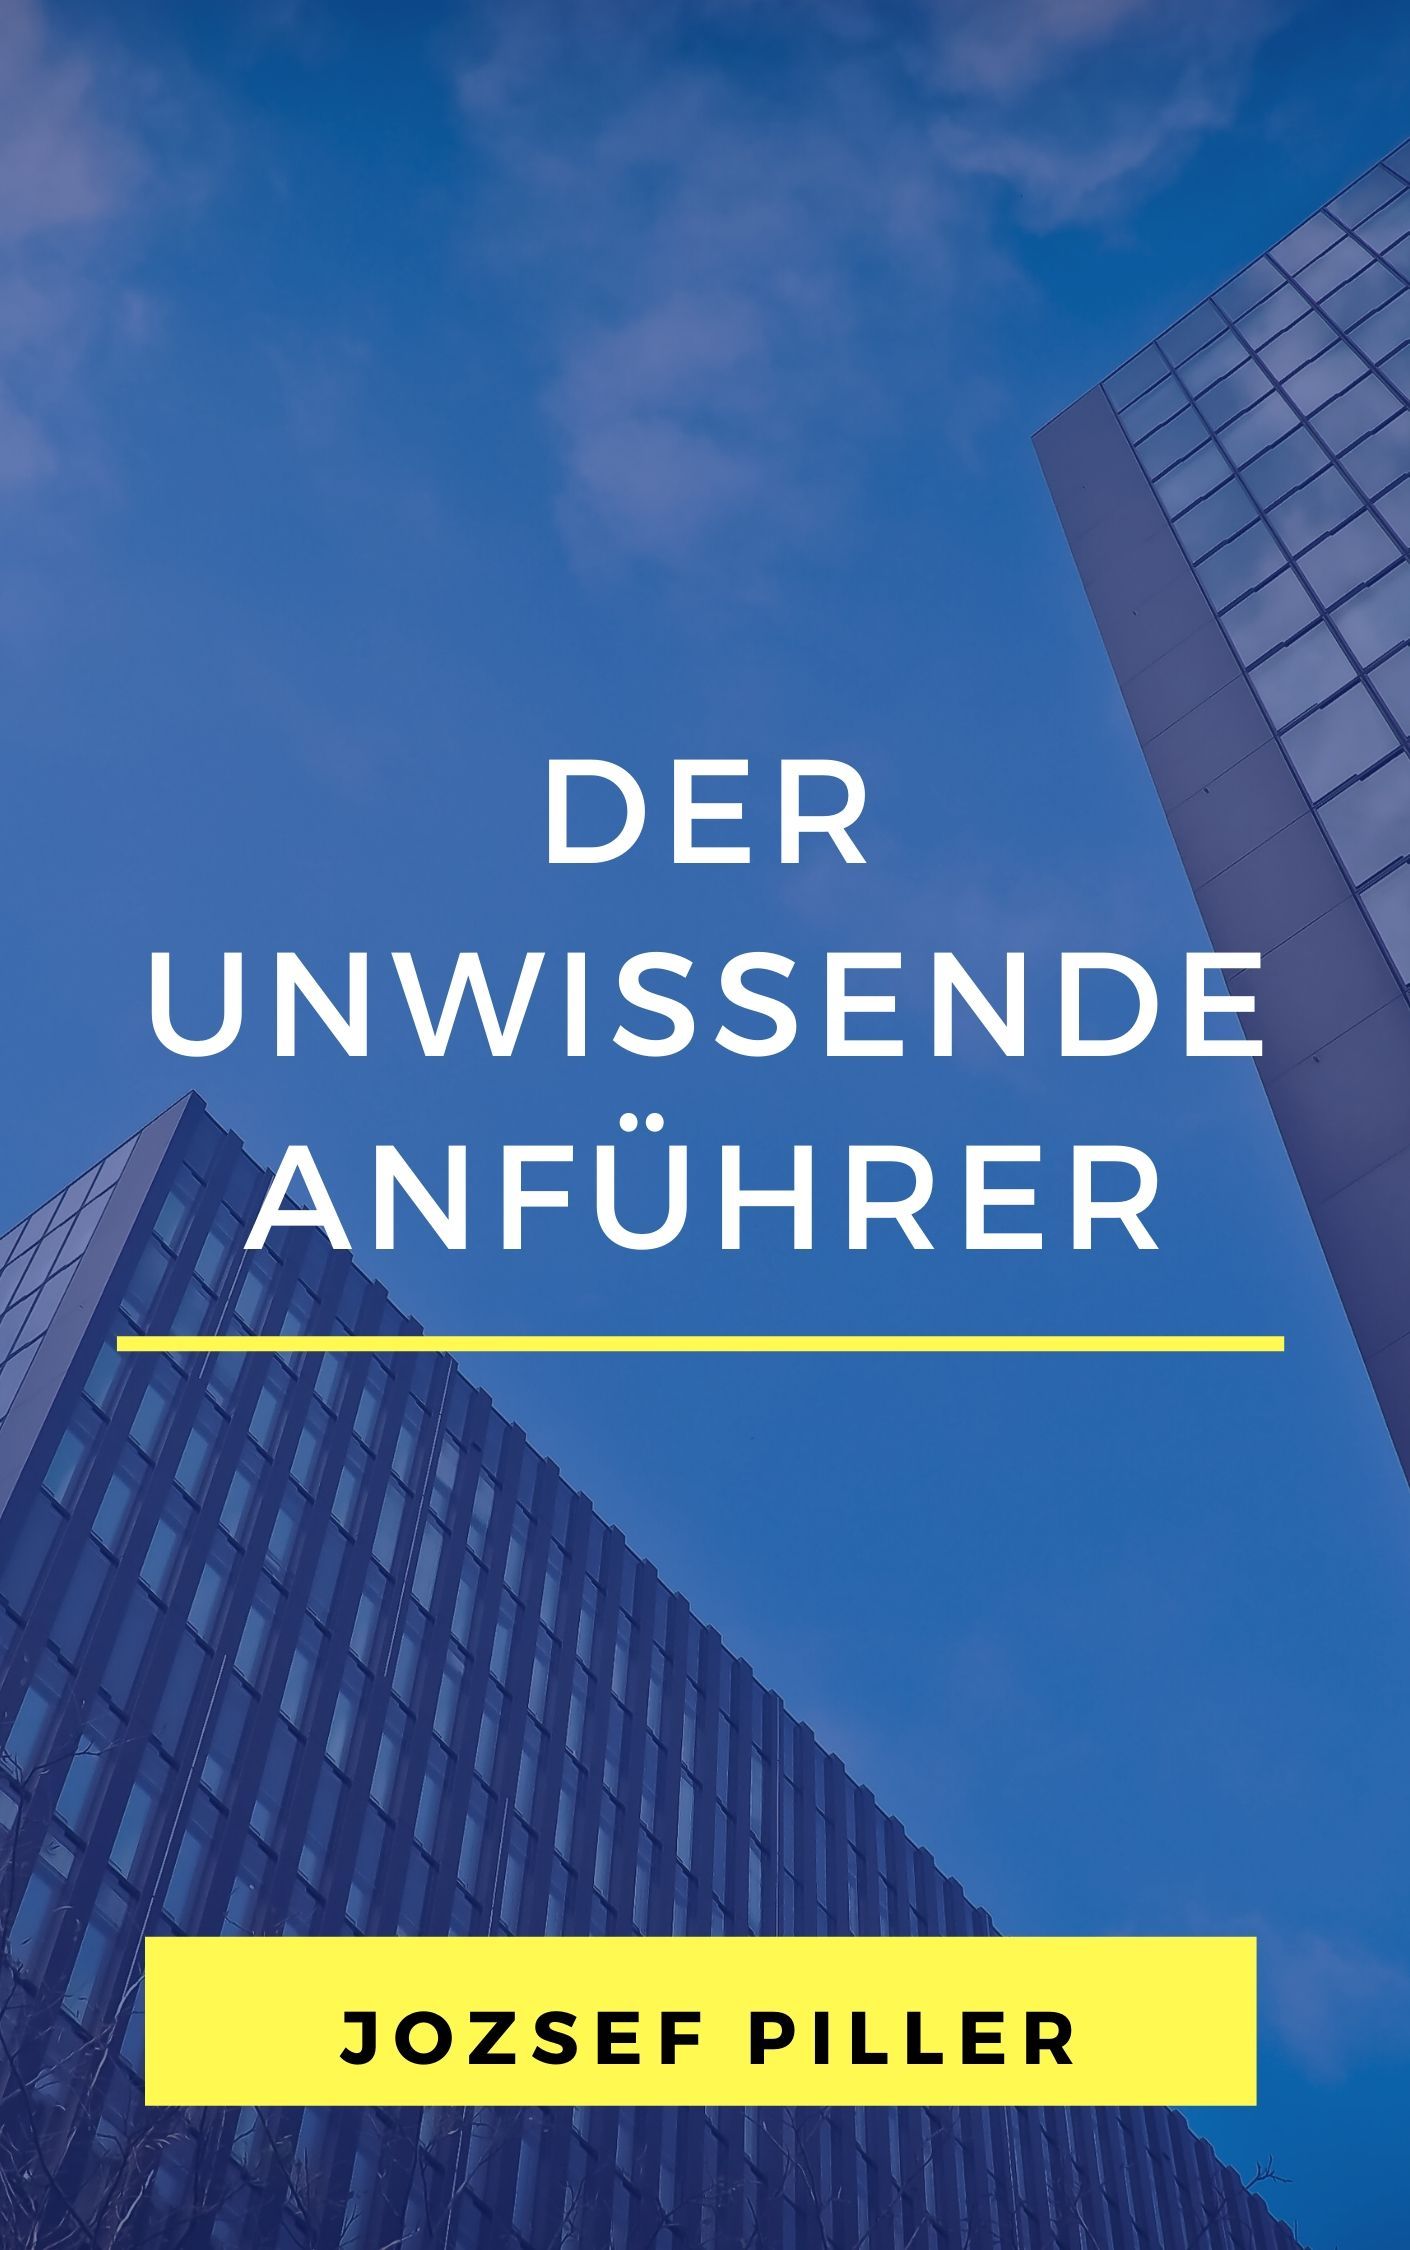 Der unwissende Anführer, e-bok av Jozsef Piller